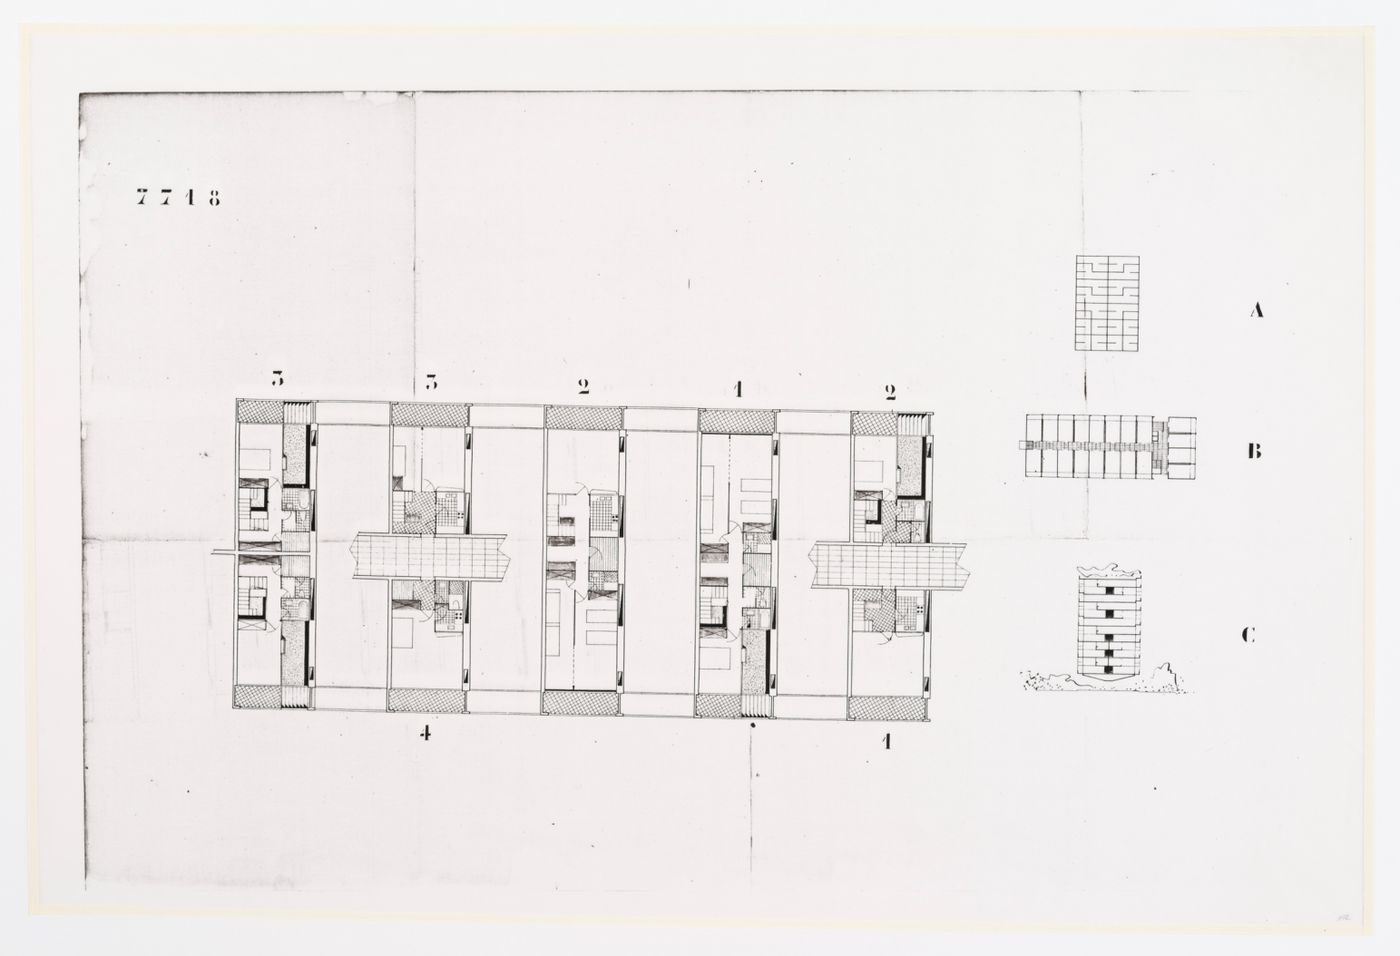 Plan d'étage for Communal multi-storey dwellings in Europe